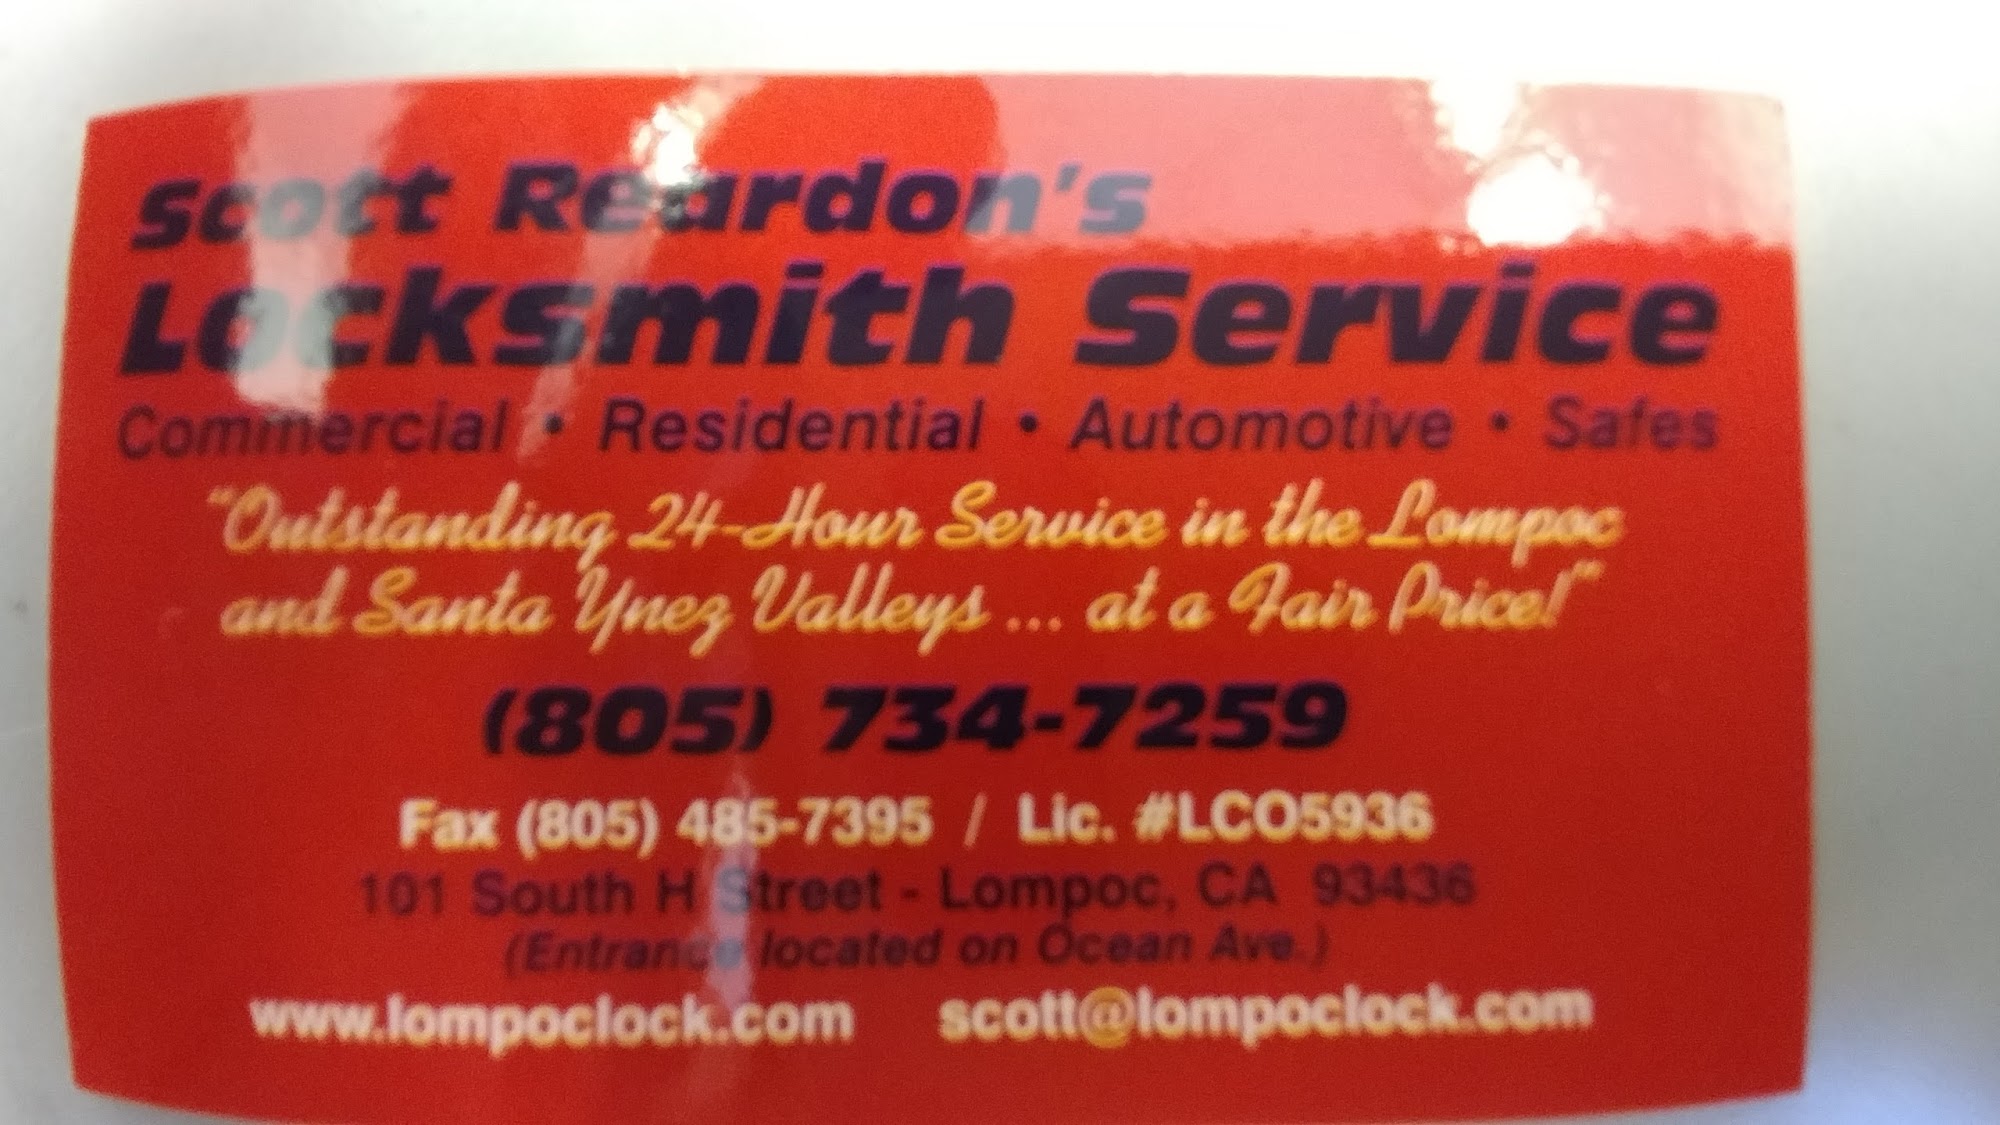 Scott Reardon's Locksmith Service